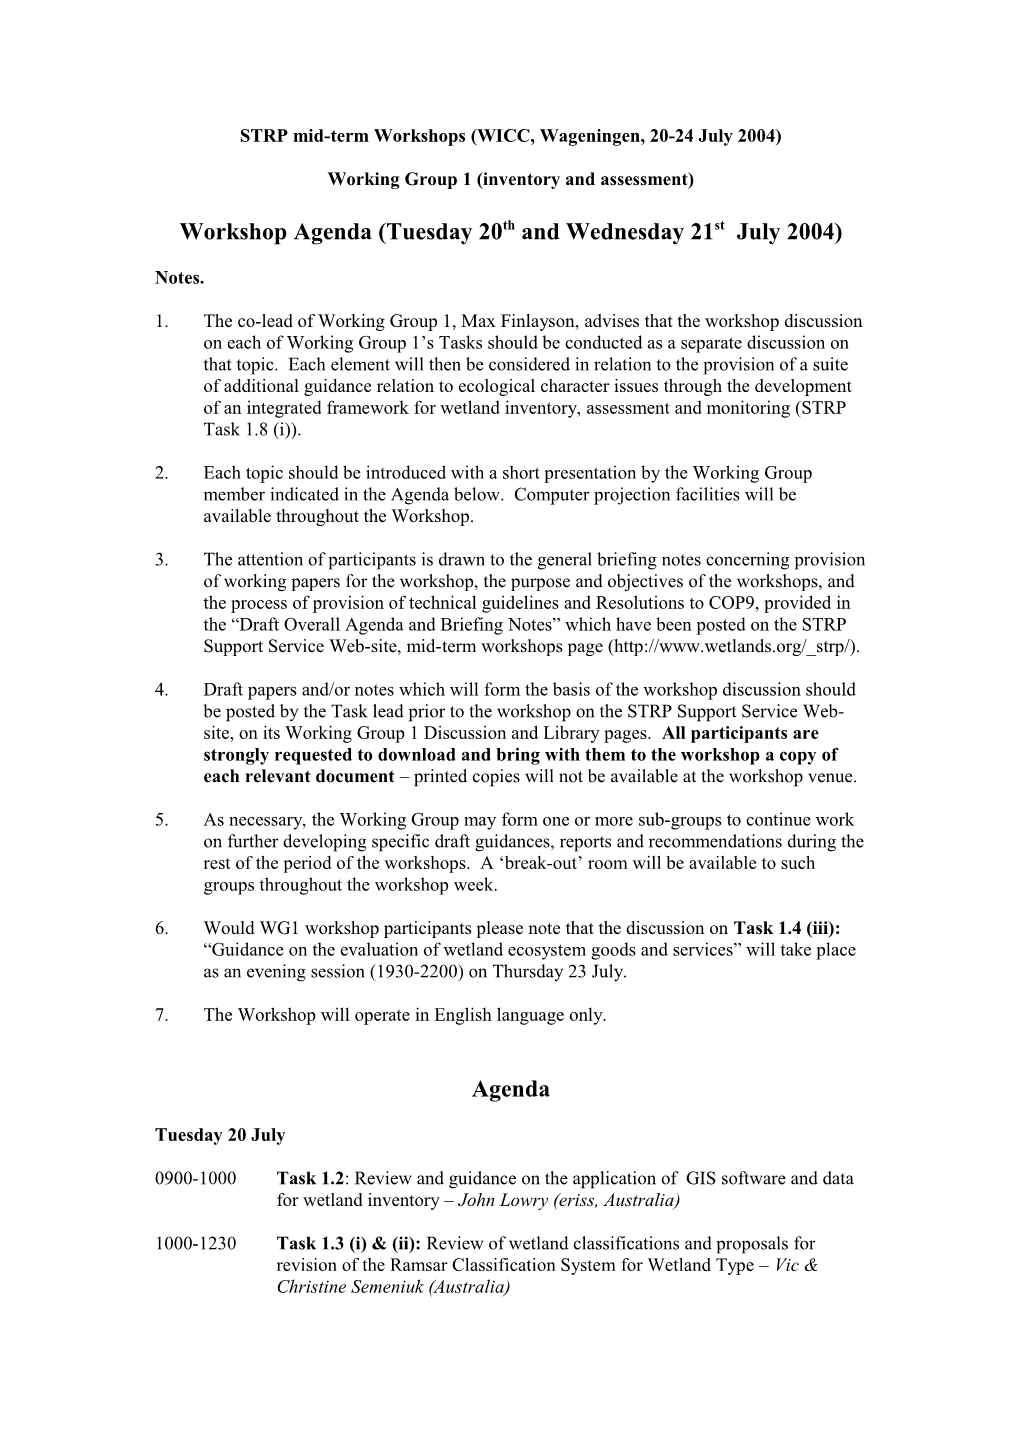 STRP Mid-Term Workshops (WICC, Wageningen, 20-24 July 2004)